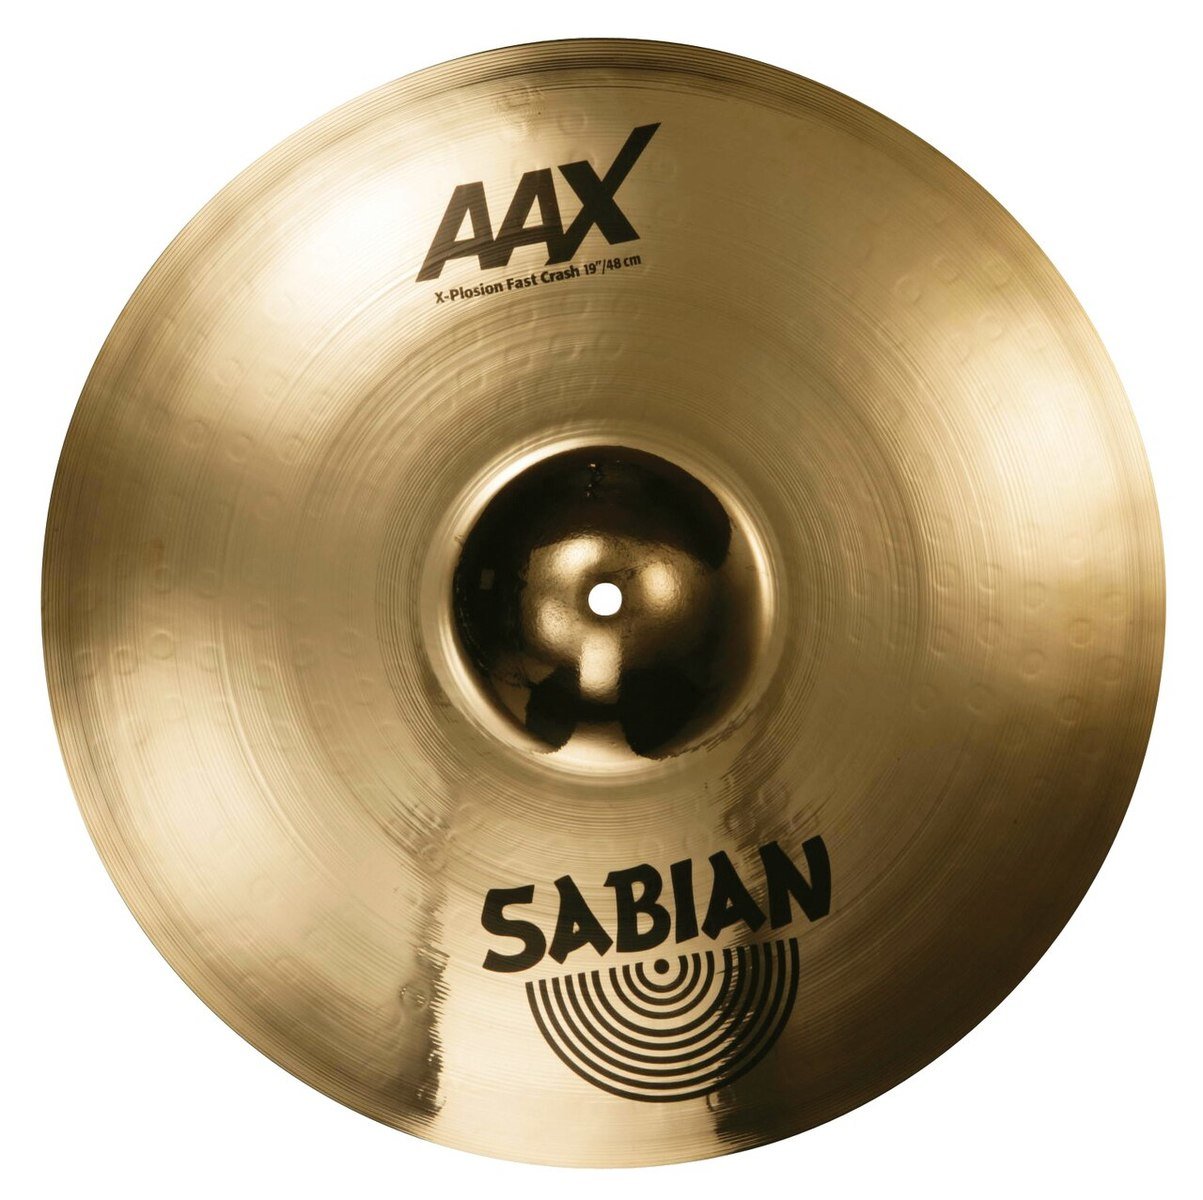 Sabian AAX 19" X-Plosion Fast Crash brilliant